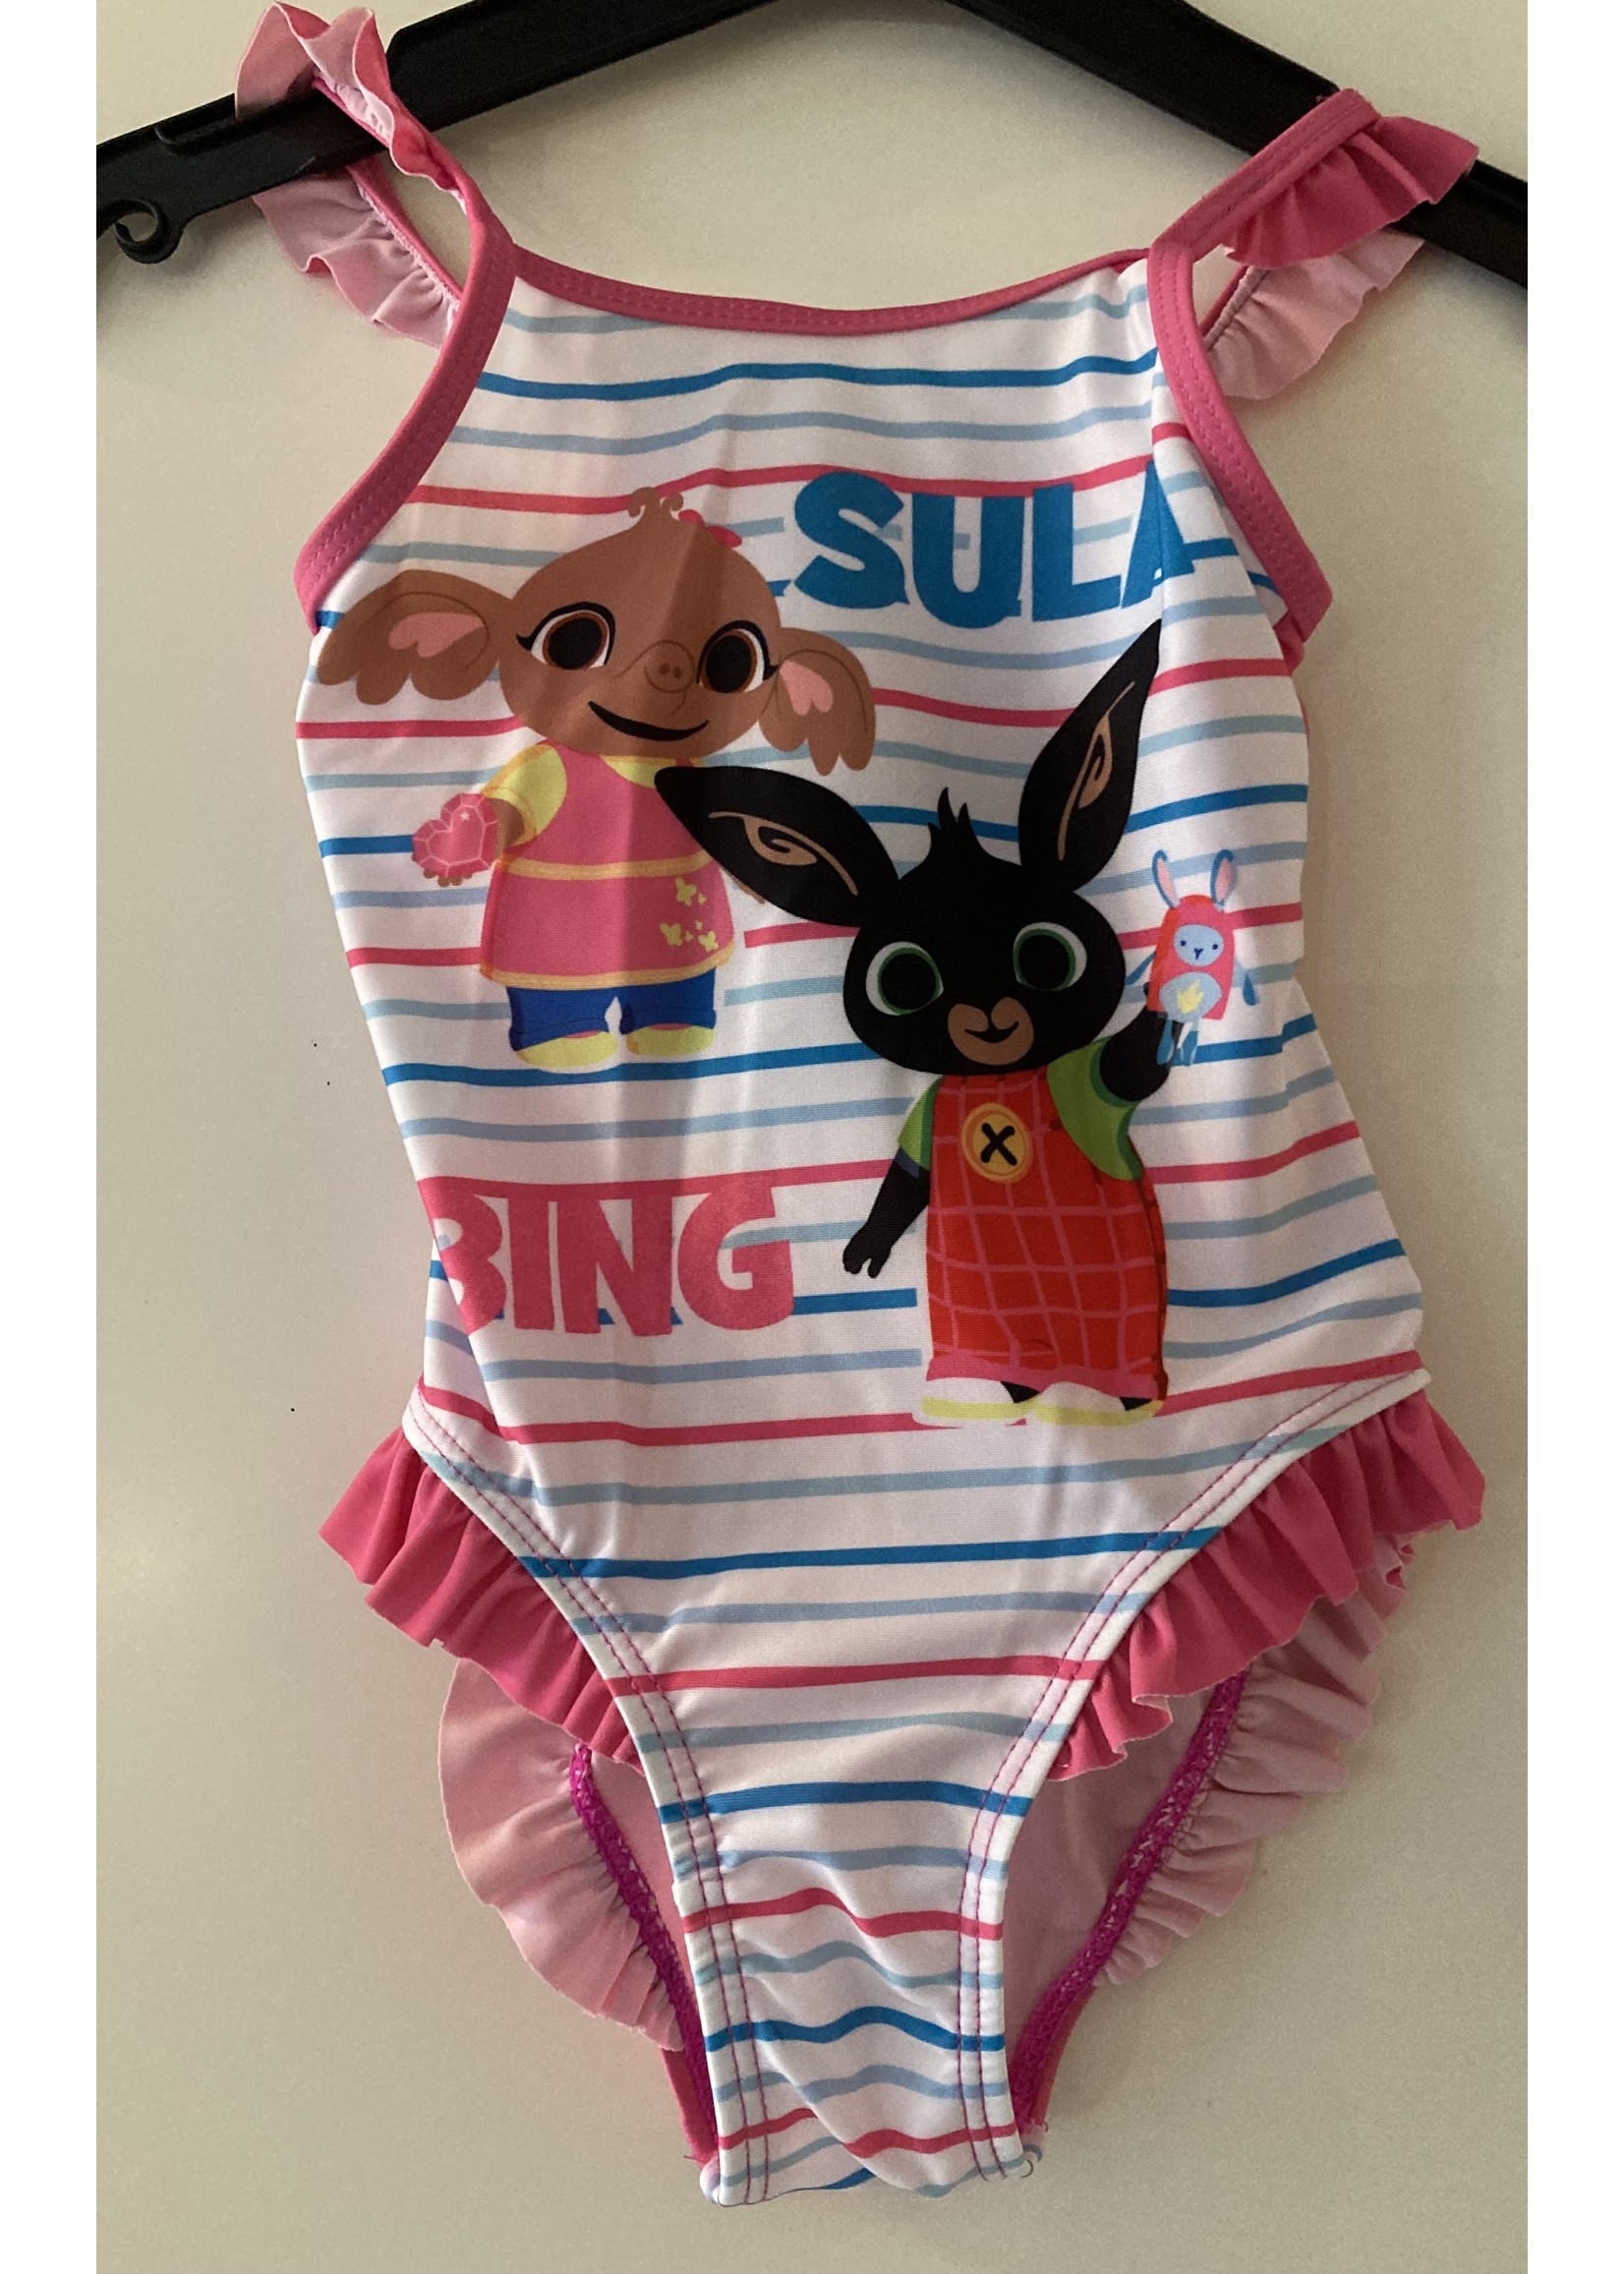 Bing Kostium kąpielowy Bunny Bing różowy